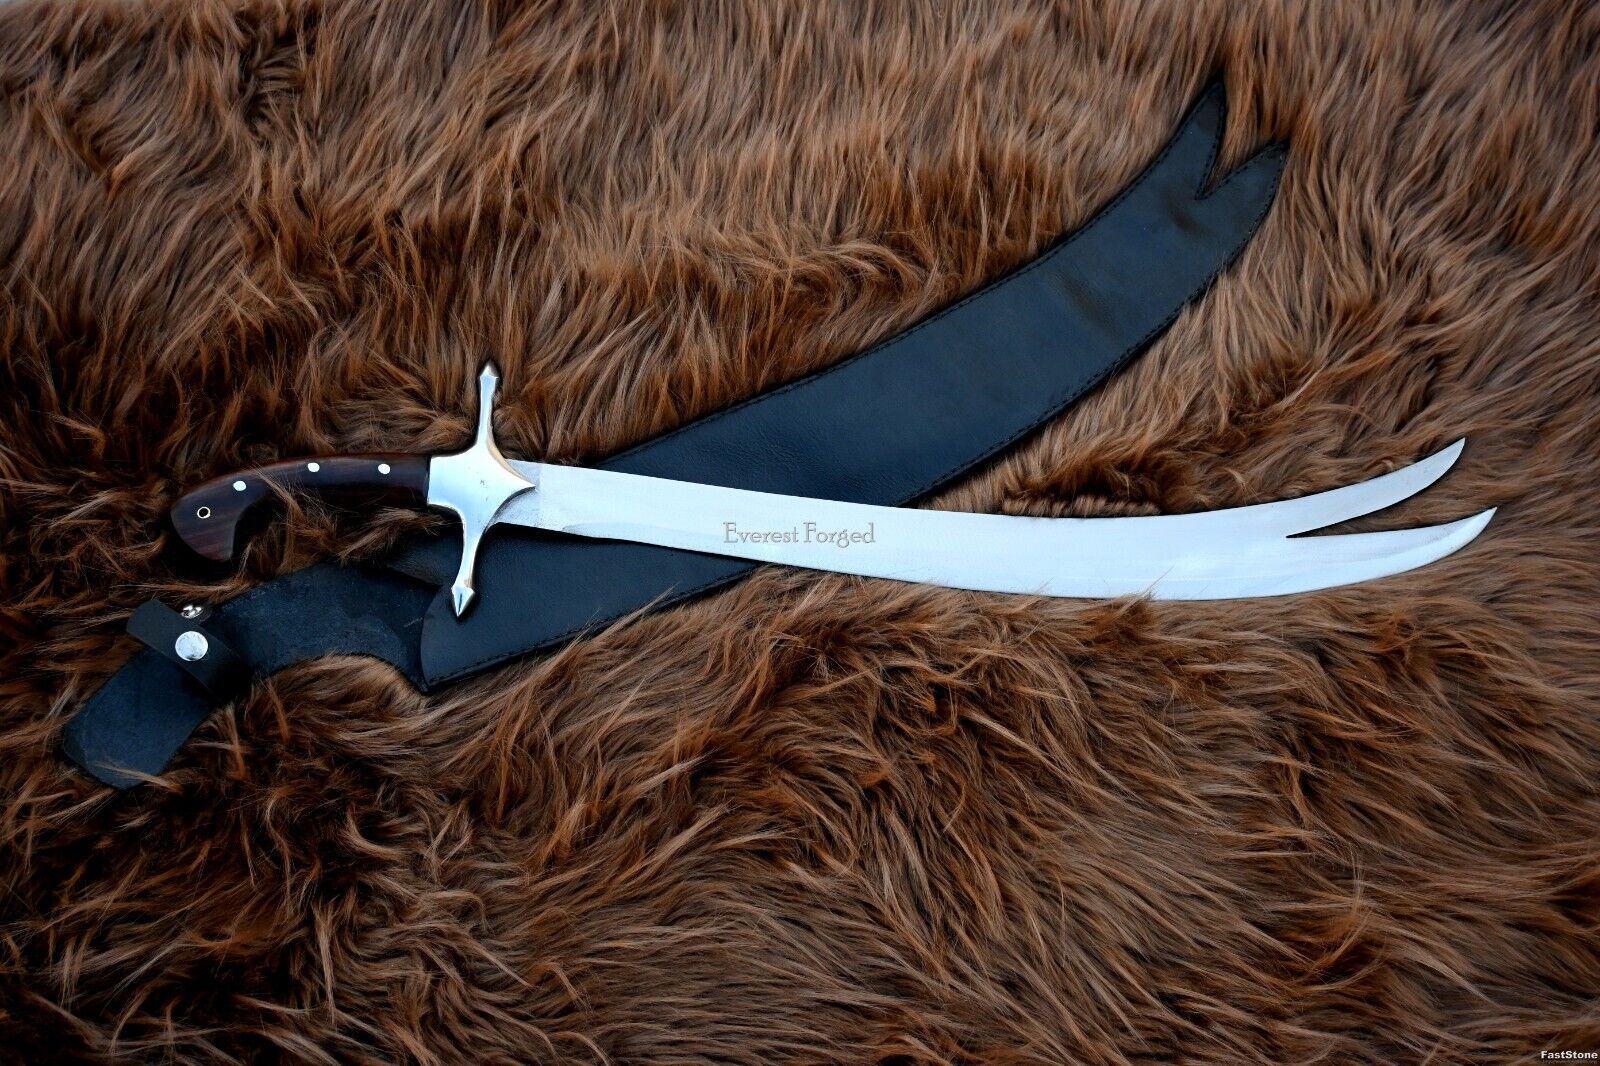 Zulfiqar Sword-machete-Hunting, Survival-handmade Sword-Tactical-Combat sword